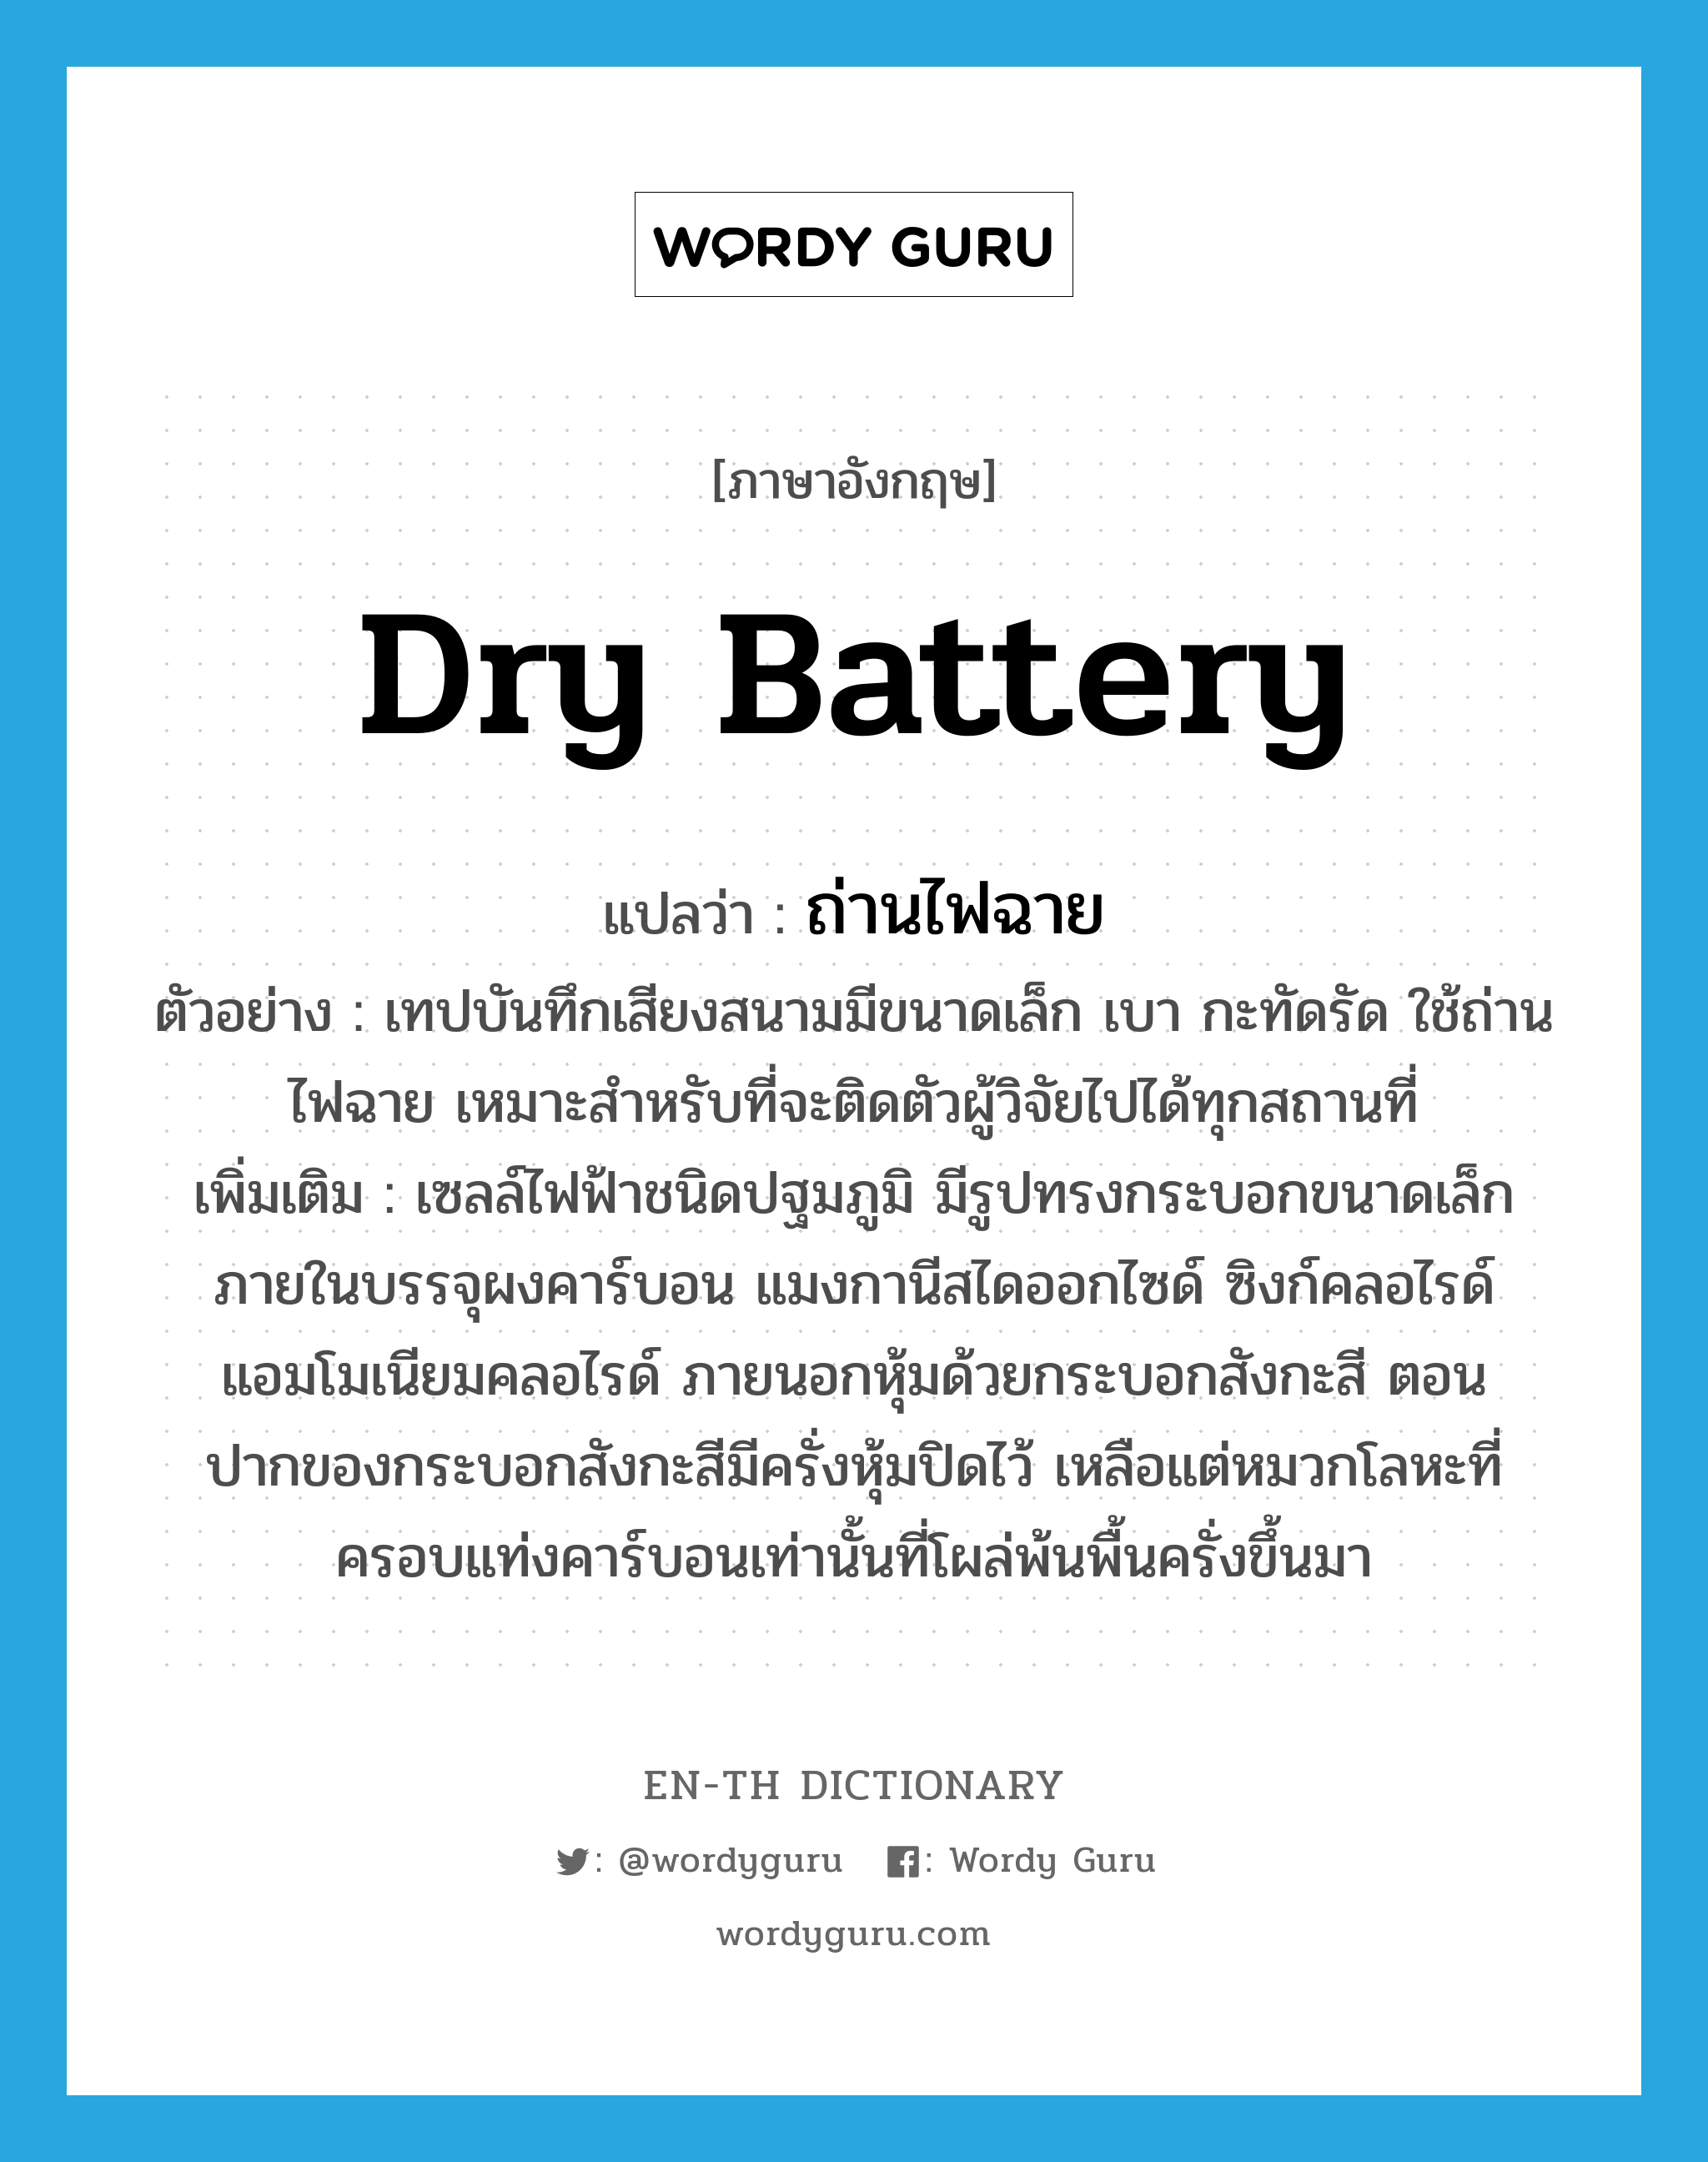 dry battery แปลว่า?, คำศัพท์ภาษาอังกฤษ dry battery แปลว่า ถ่านไฟฉาย ประเภท N ตัวอย่าง เทปบันทึกเสียงสนามมีขนาดเล็ก เบา กะทัดรัด ใช้ถ่านไฟฉาย เหมาะสำหรับที่จะติดตัวผู้วิจัยไปได้ทุกสถานที่ เพิ่มเติม เซลล์ไฟฟ้าชนิดปฐมภูมิ มีรูปทรงกระบอกขนาดเล็ก ภายในบรรจุผงคาร์บอน แมงกานีสไดออกไซด์ ซิงก์คลอไรด์ แอมโมเนียมคลอไรด์ ภายนอกหุ้มด้วยกระบอกสังกะสี ตอนปากของกระบอกสังกะสีมีครั่งหุ้มปิดไว้ เหลือแต่หมวกโลหะที่ครอบแท่งคาร์บอนเท่านั้นที่โผล่พ้นพื้นครั่งขึ้นมา หมวด N